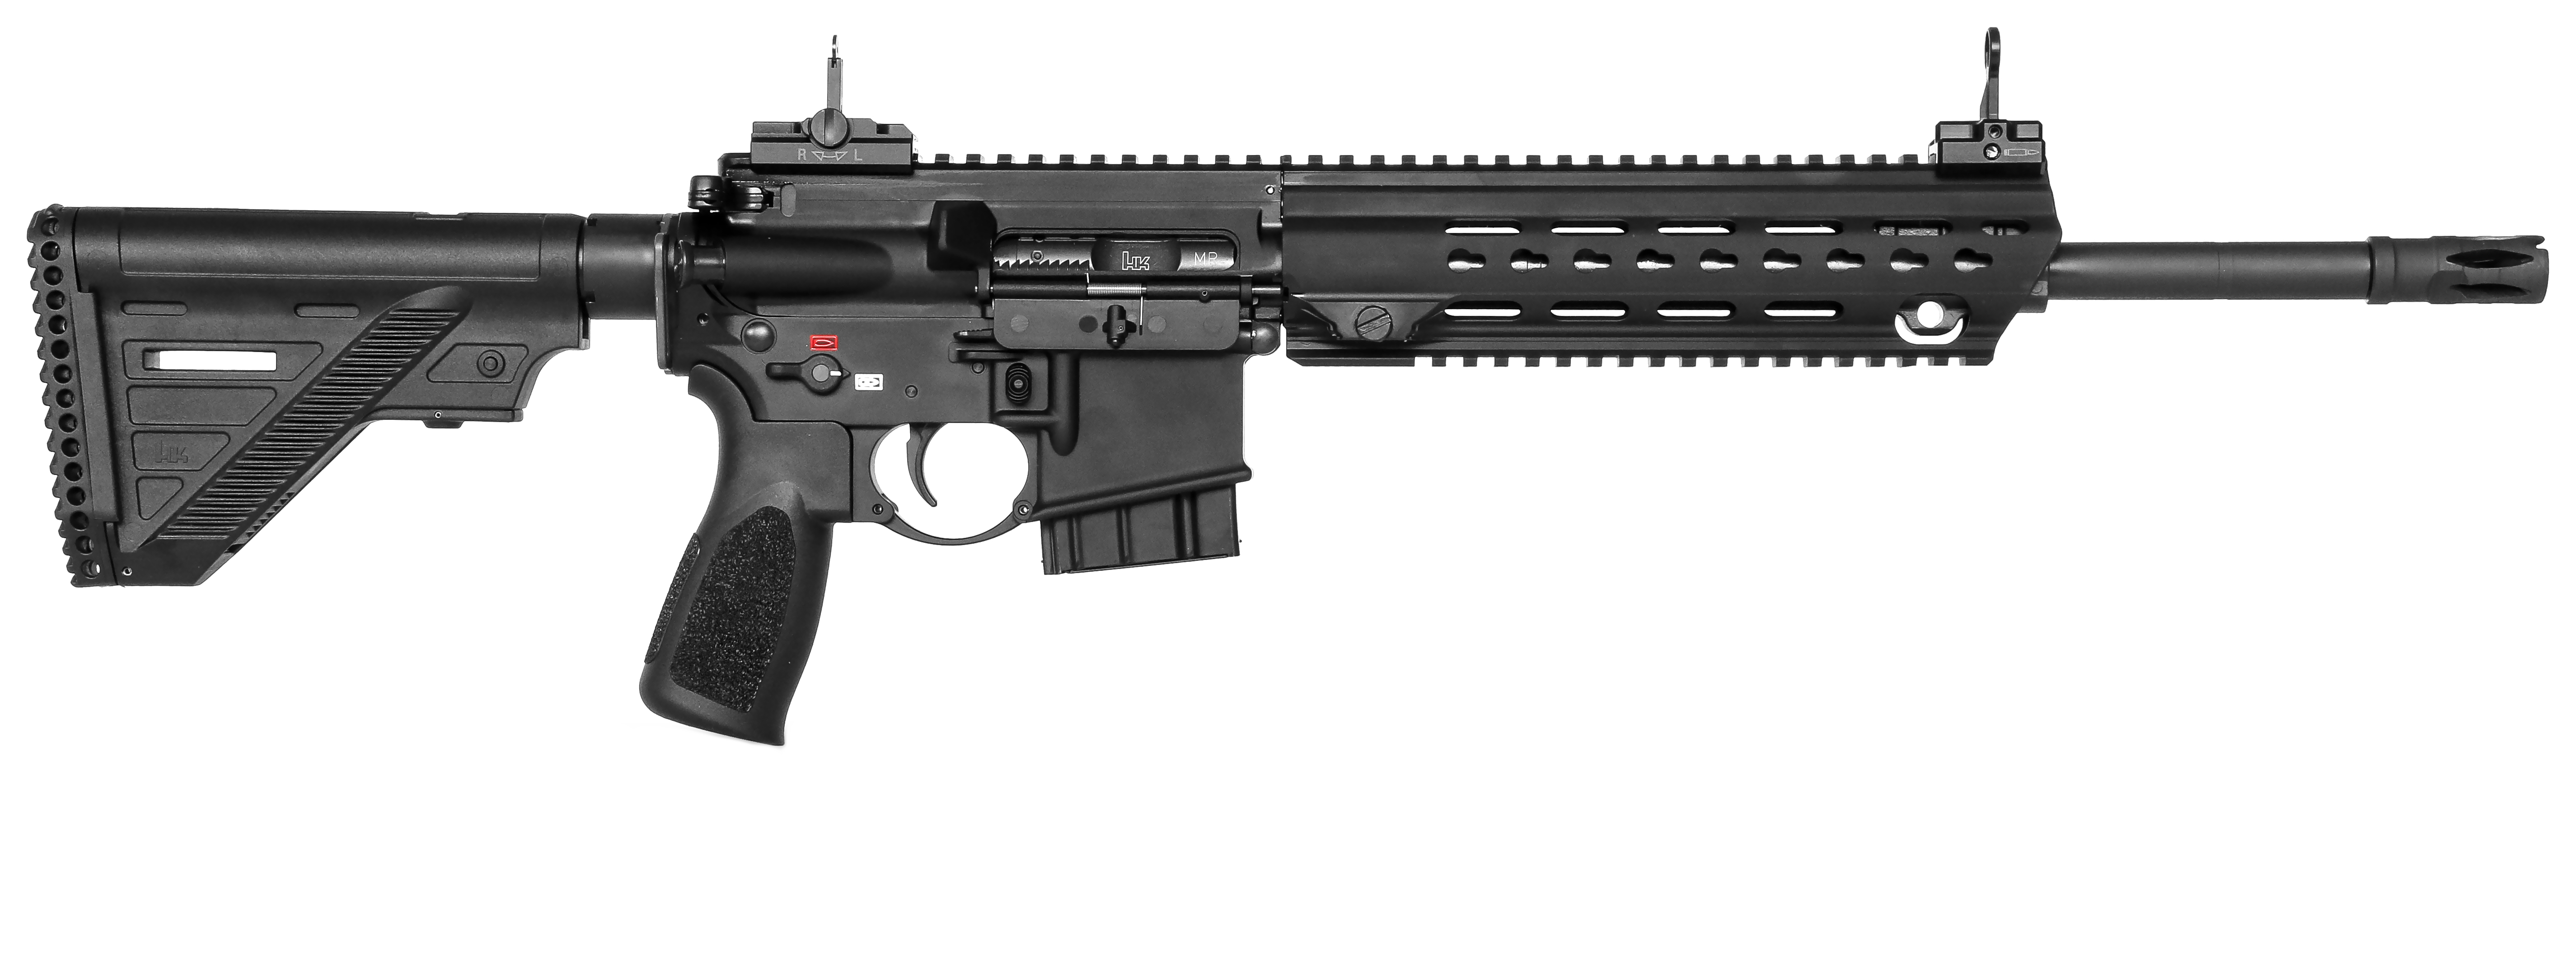 HK MR223 zivile Version des HK416 Ansicht rechts | F.A.S.T. Onlineshop